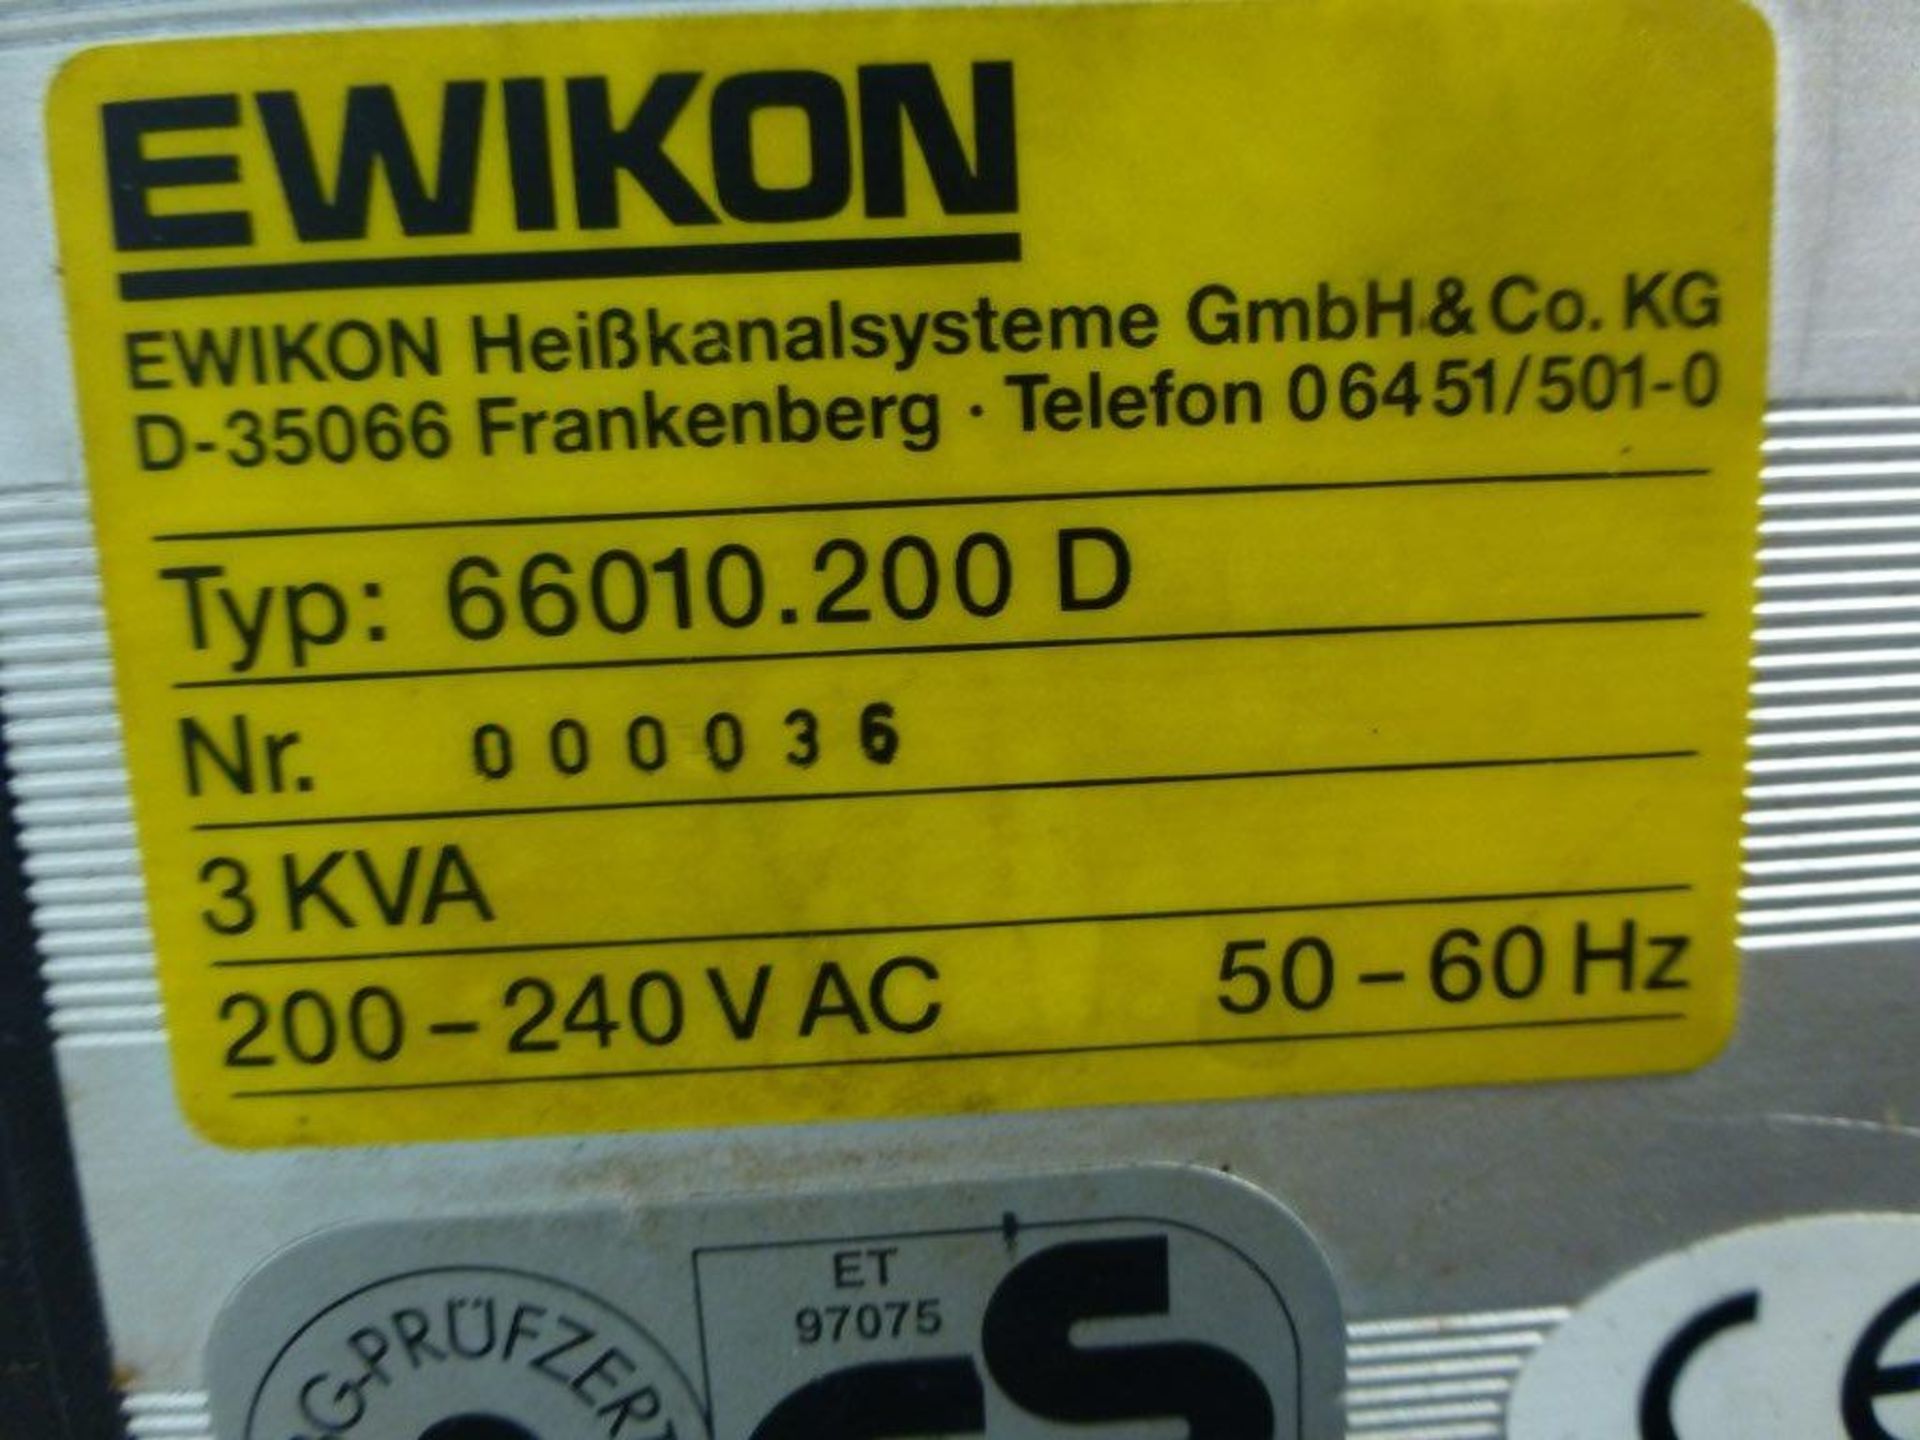 Ewikon 66010.200D controller unit, serial No 000036 - Image 2 of 2